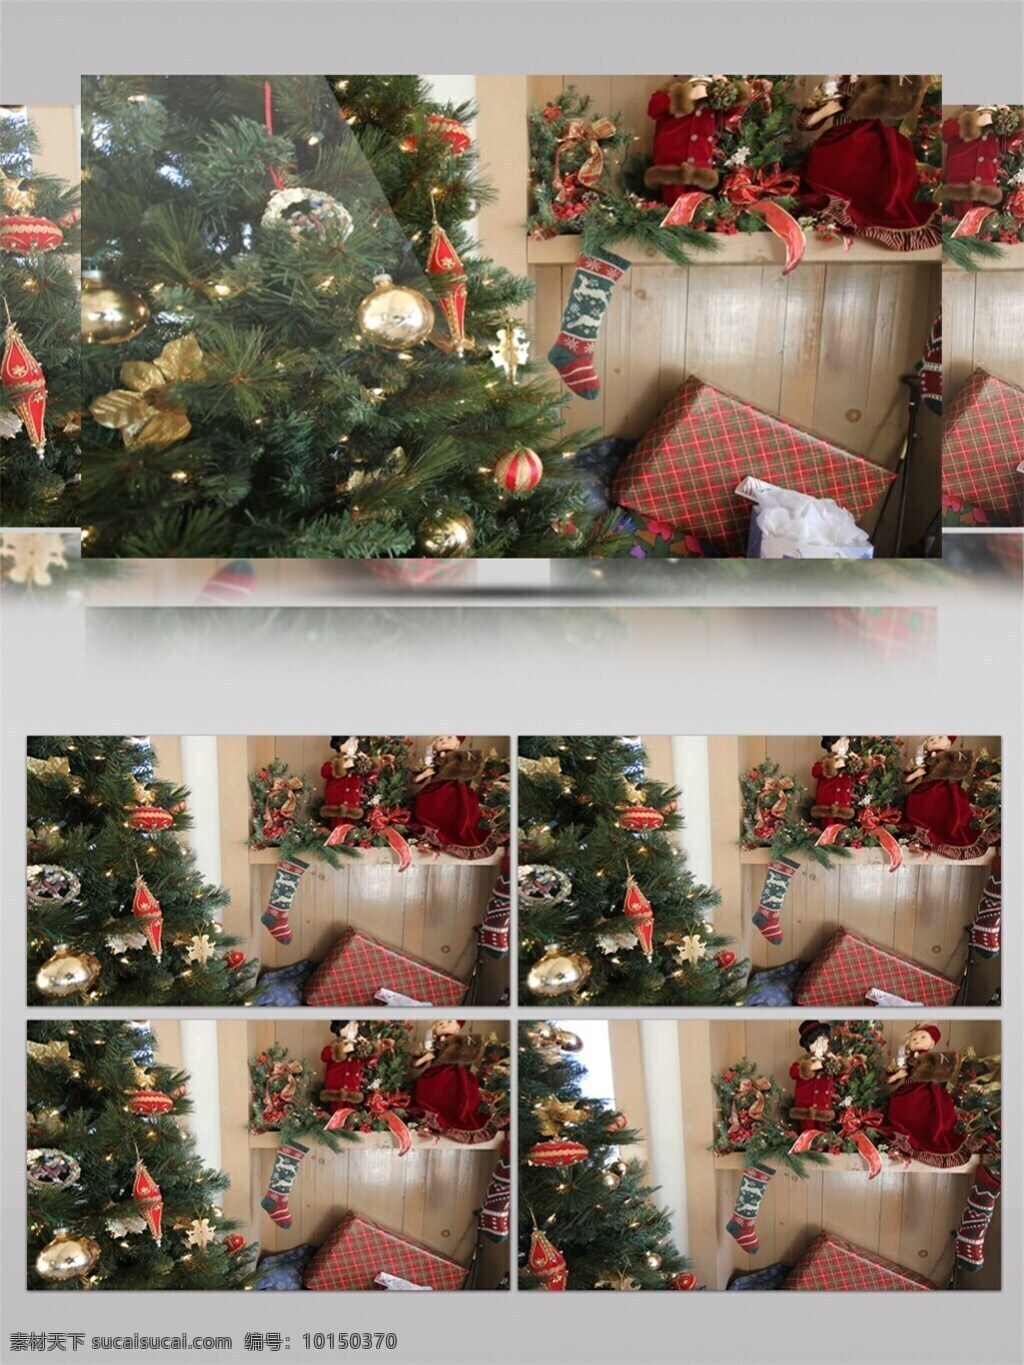 节日 粒 礼物 圣诞节 视频 高质量 背景 美景动态背景 圣诞节礼物 圣诞树